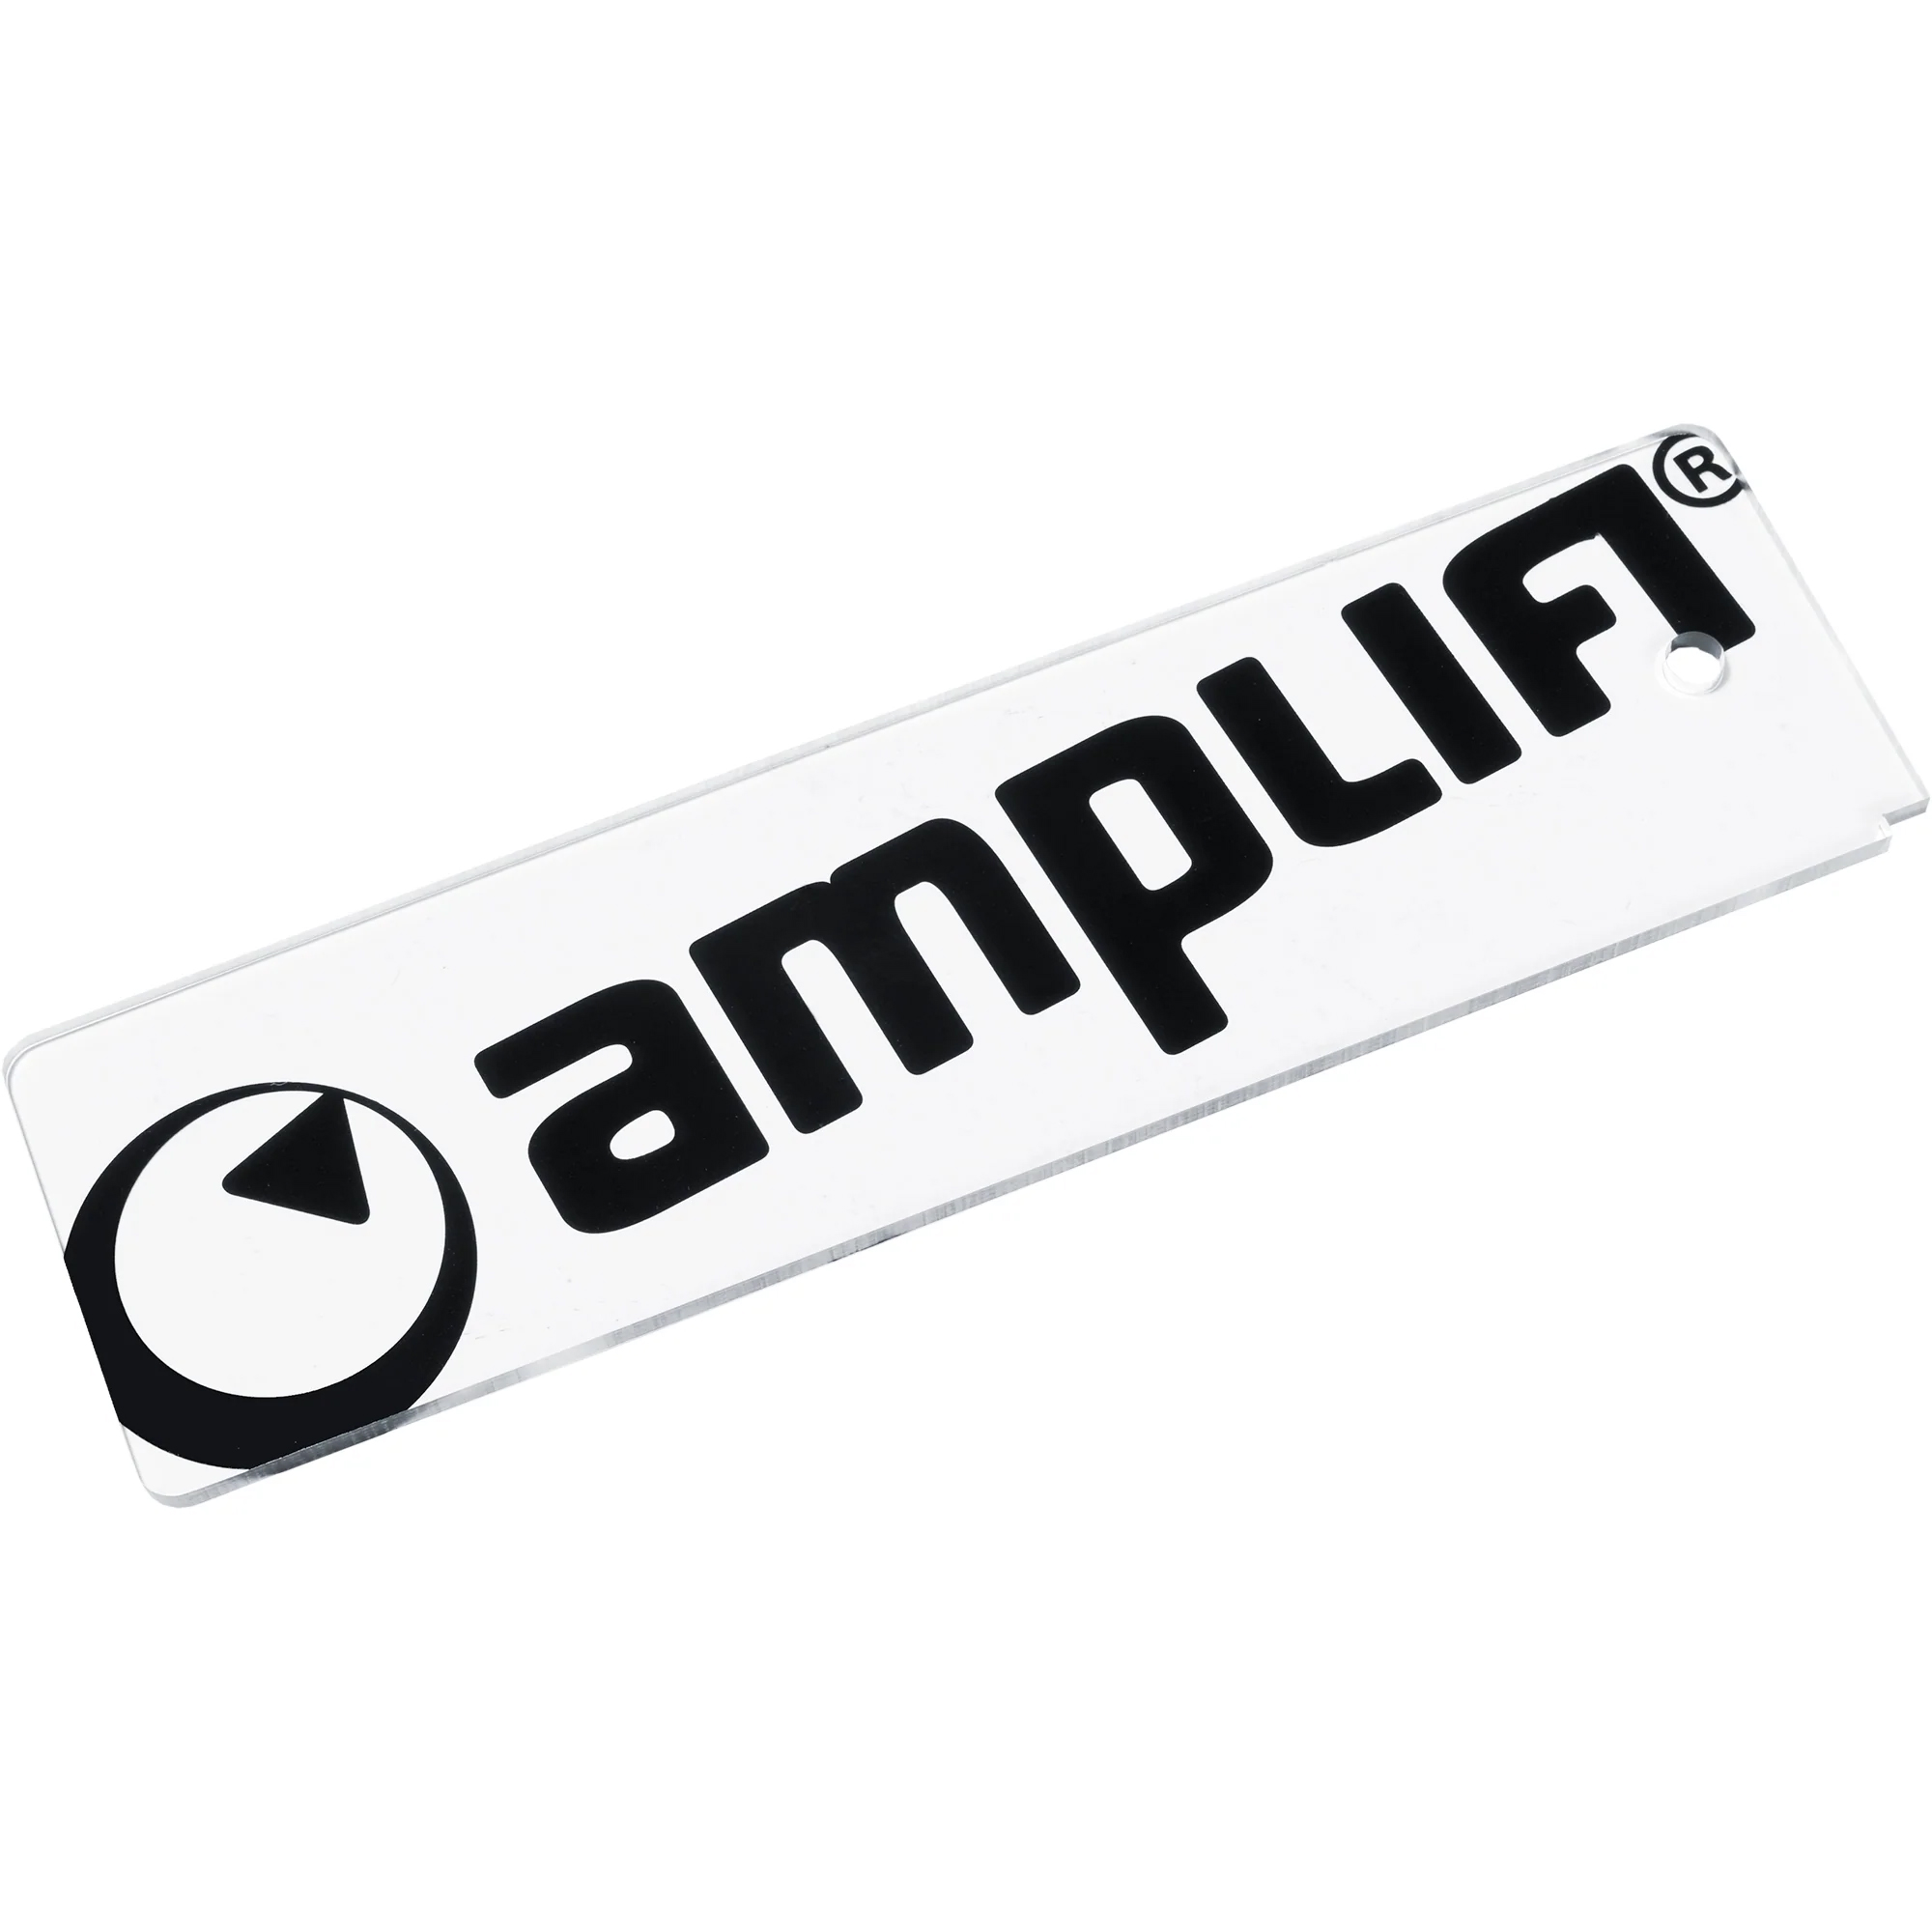 Amplifi Base Razor Ski/Snowboard Wax Scraper